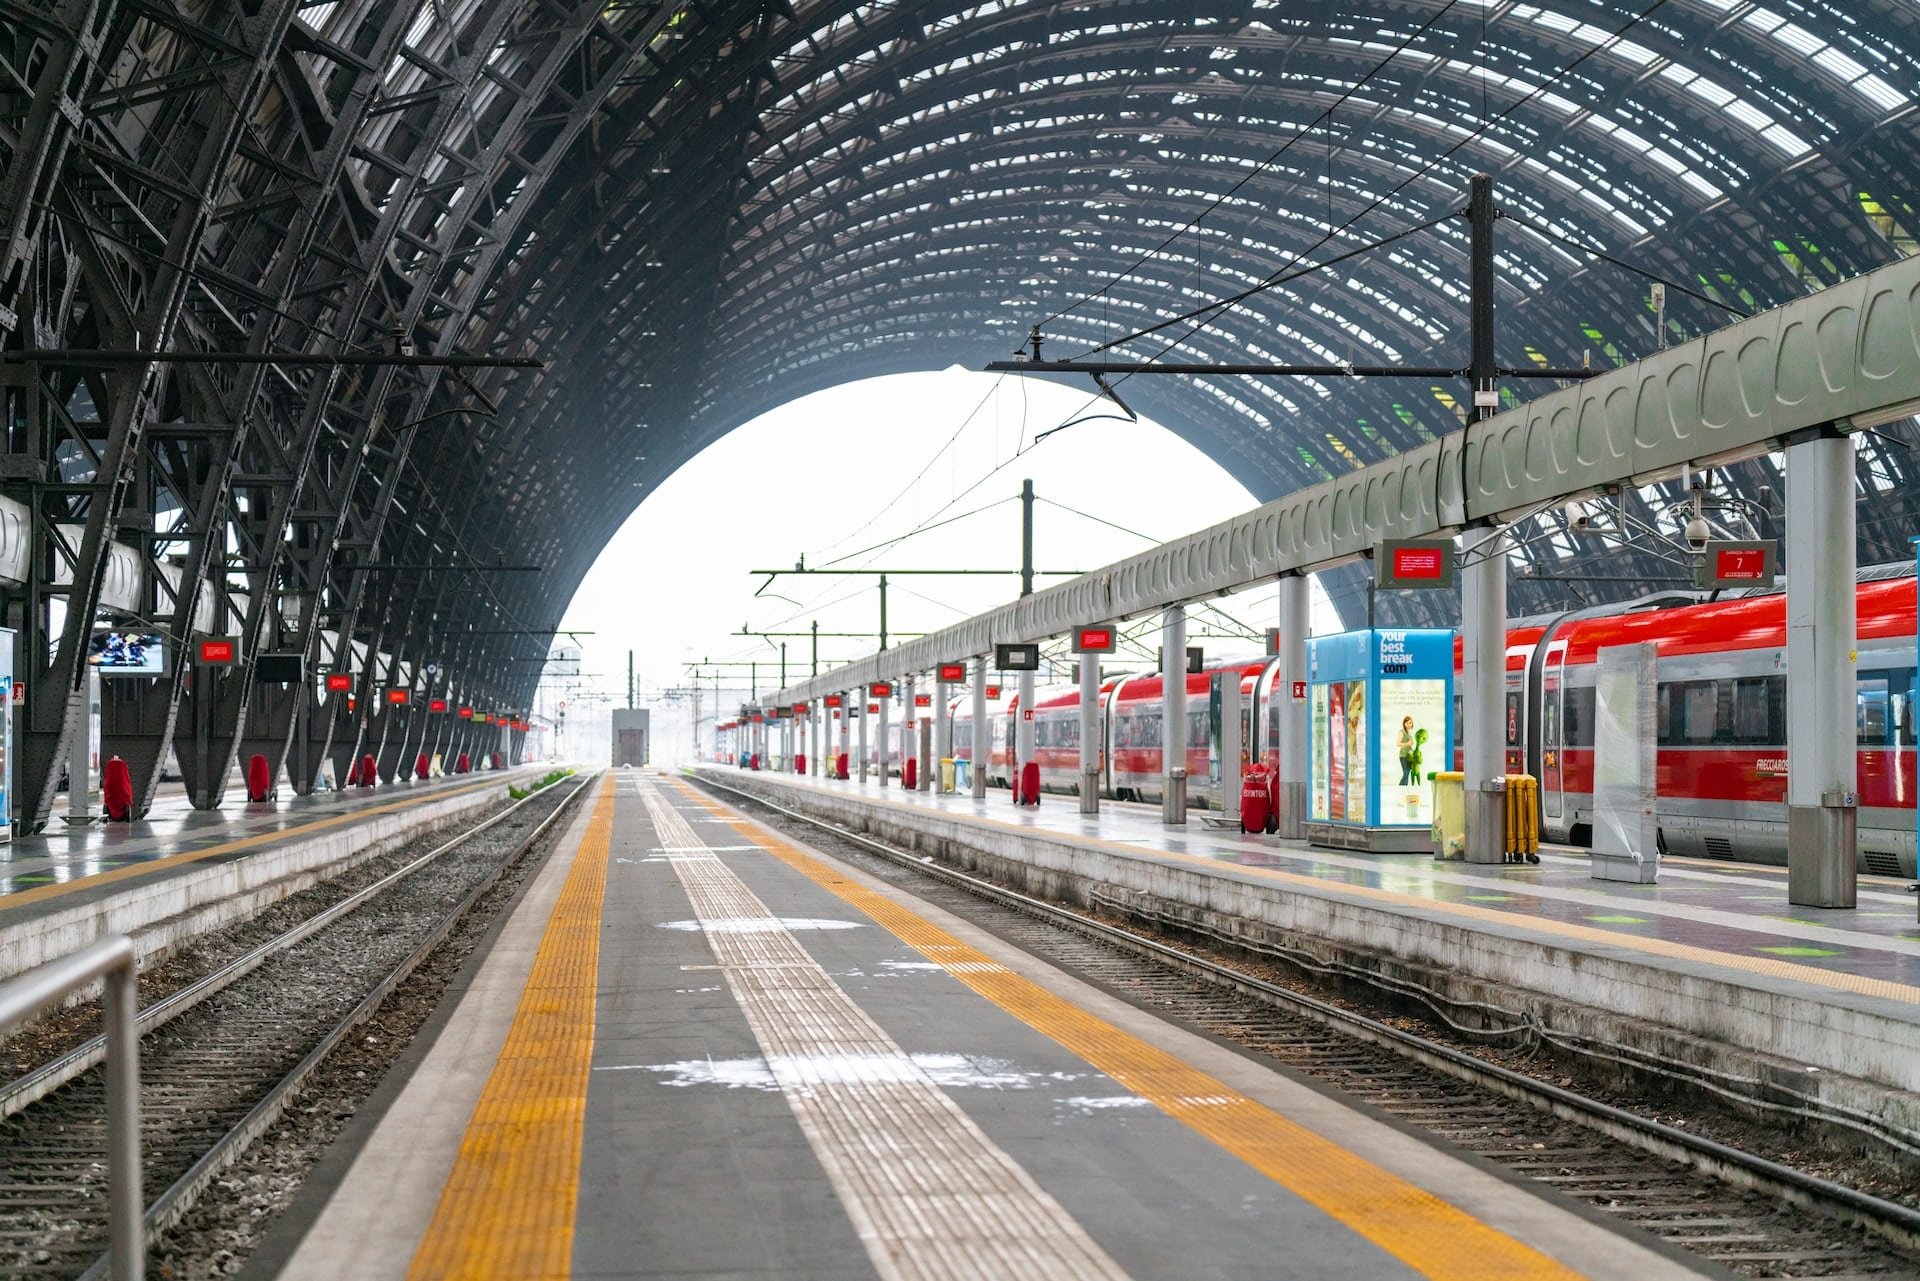 Centrada en torno a una de las mayores estaciones de tren de Europa, Milano Centrale ofrece excelentes conexiones con otros destinos italianos y europeos, así como numerosos hoteles económicos y de gama media.